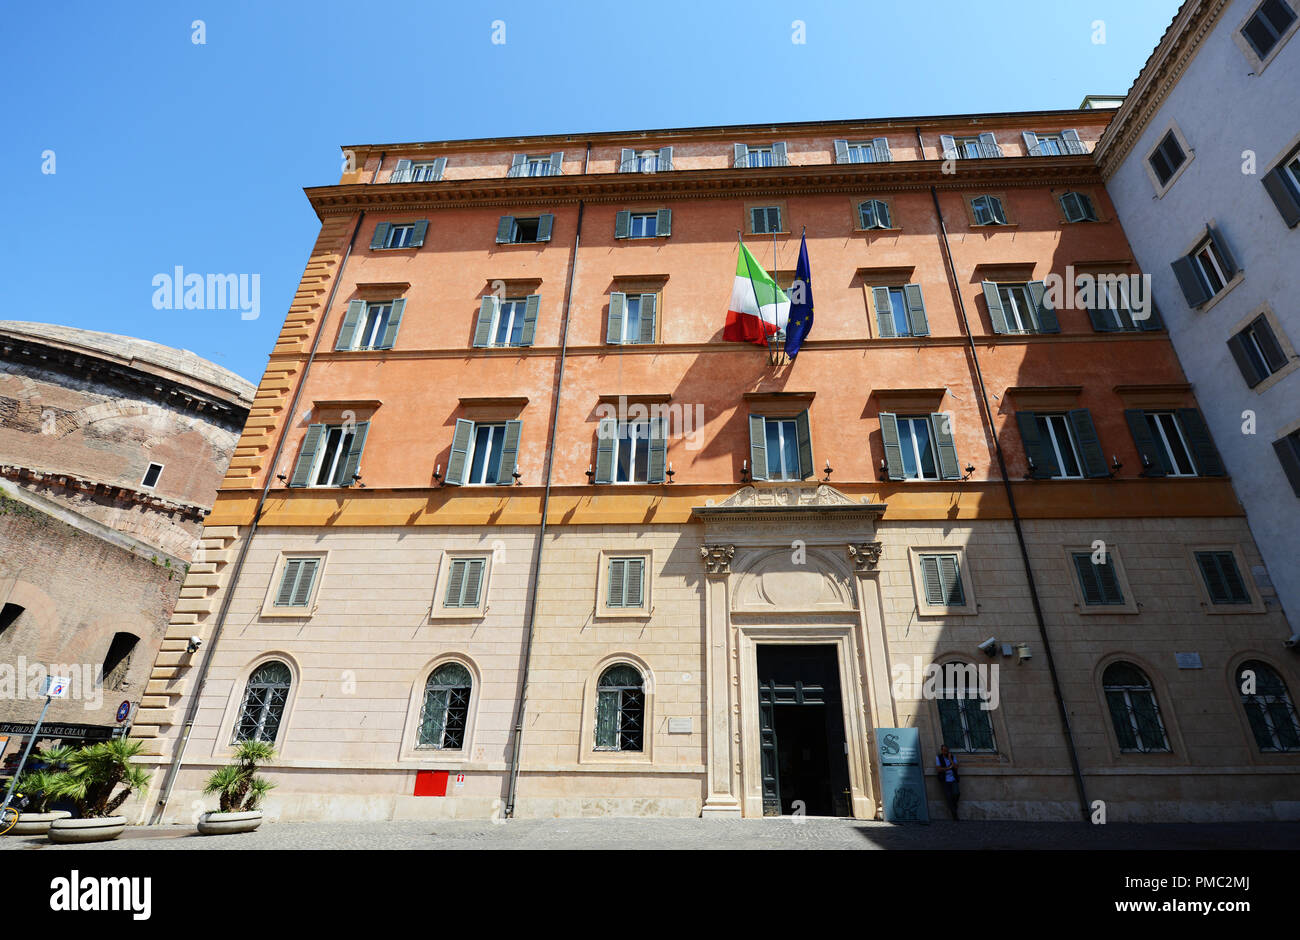 In einem wunderschönen alten Gebäude an der Piazza Della Minerva in Rom, Italien. Stockfoto